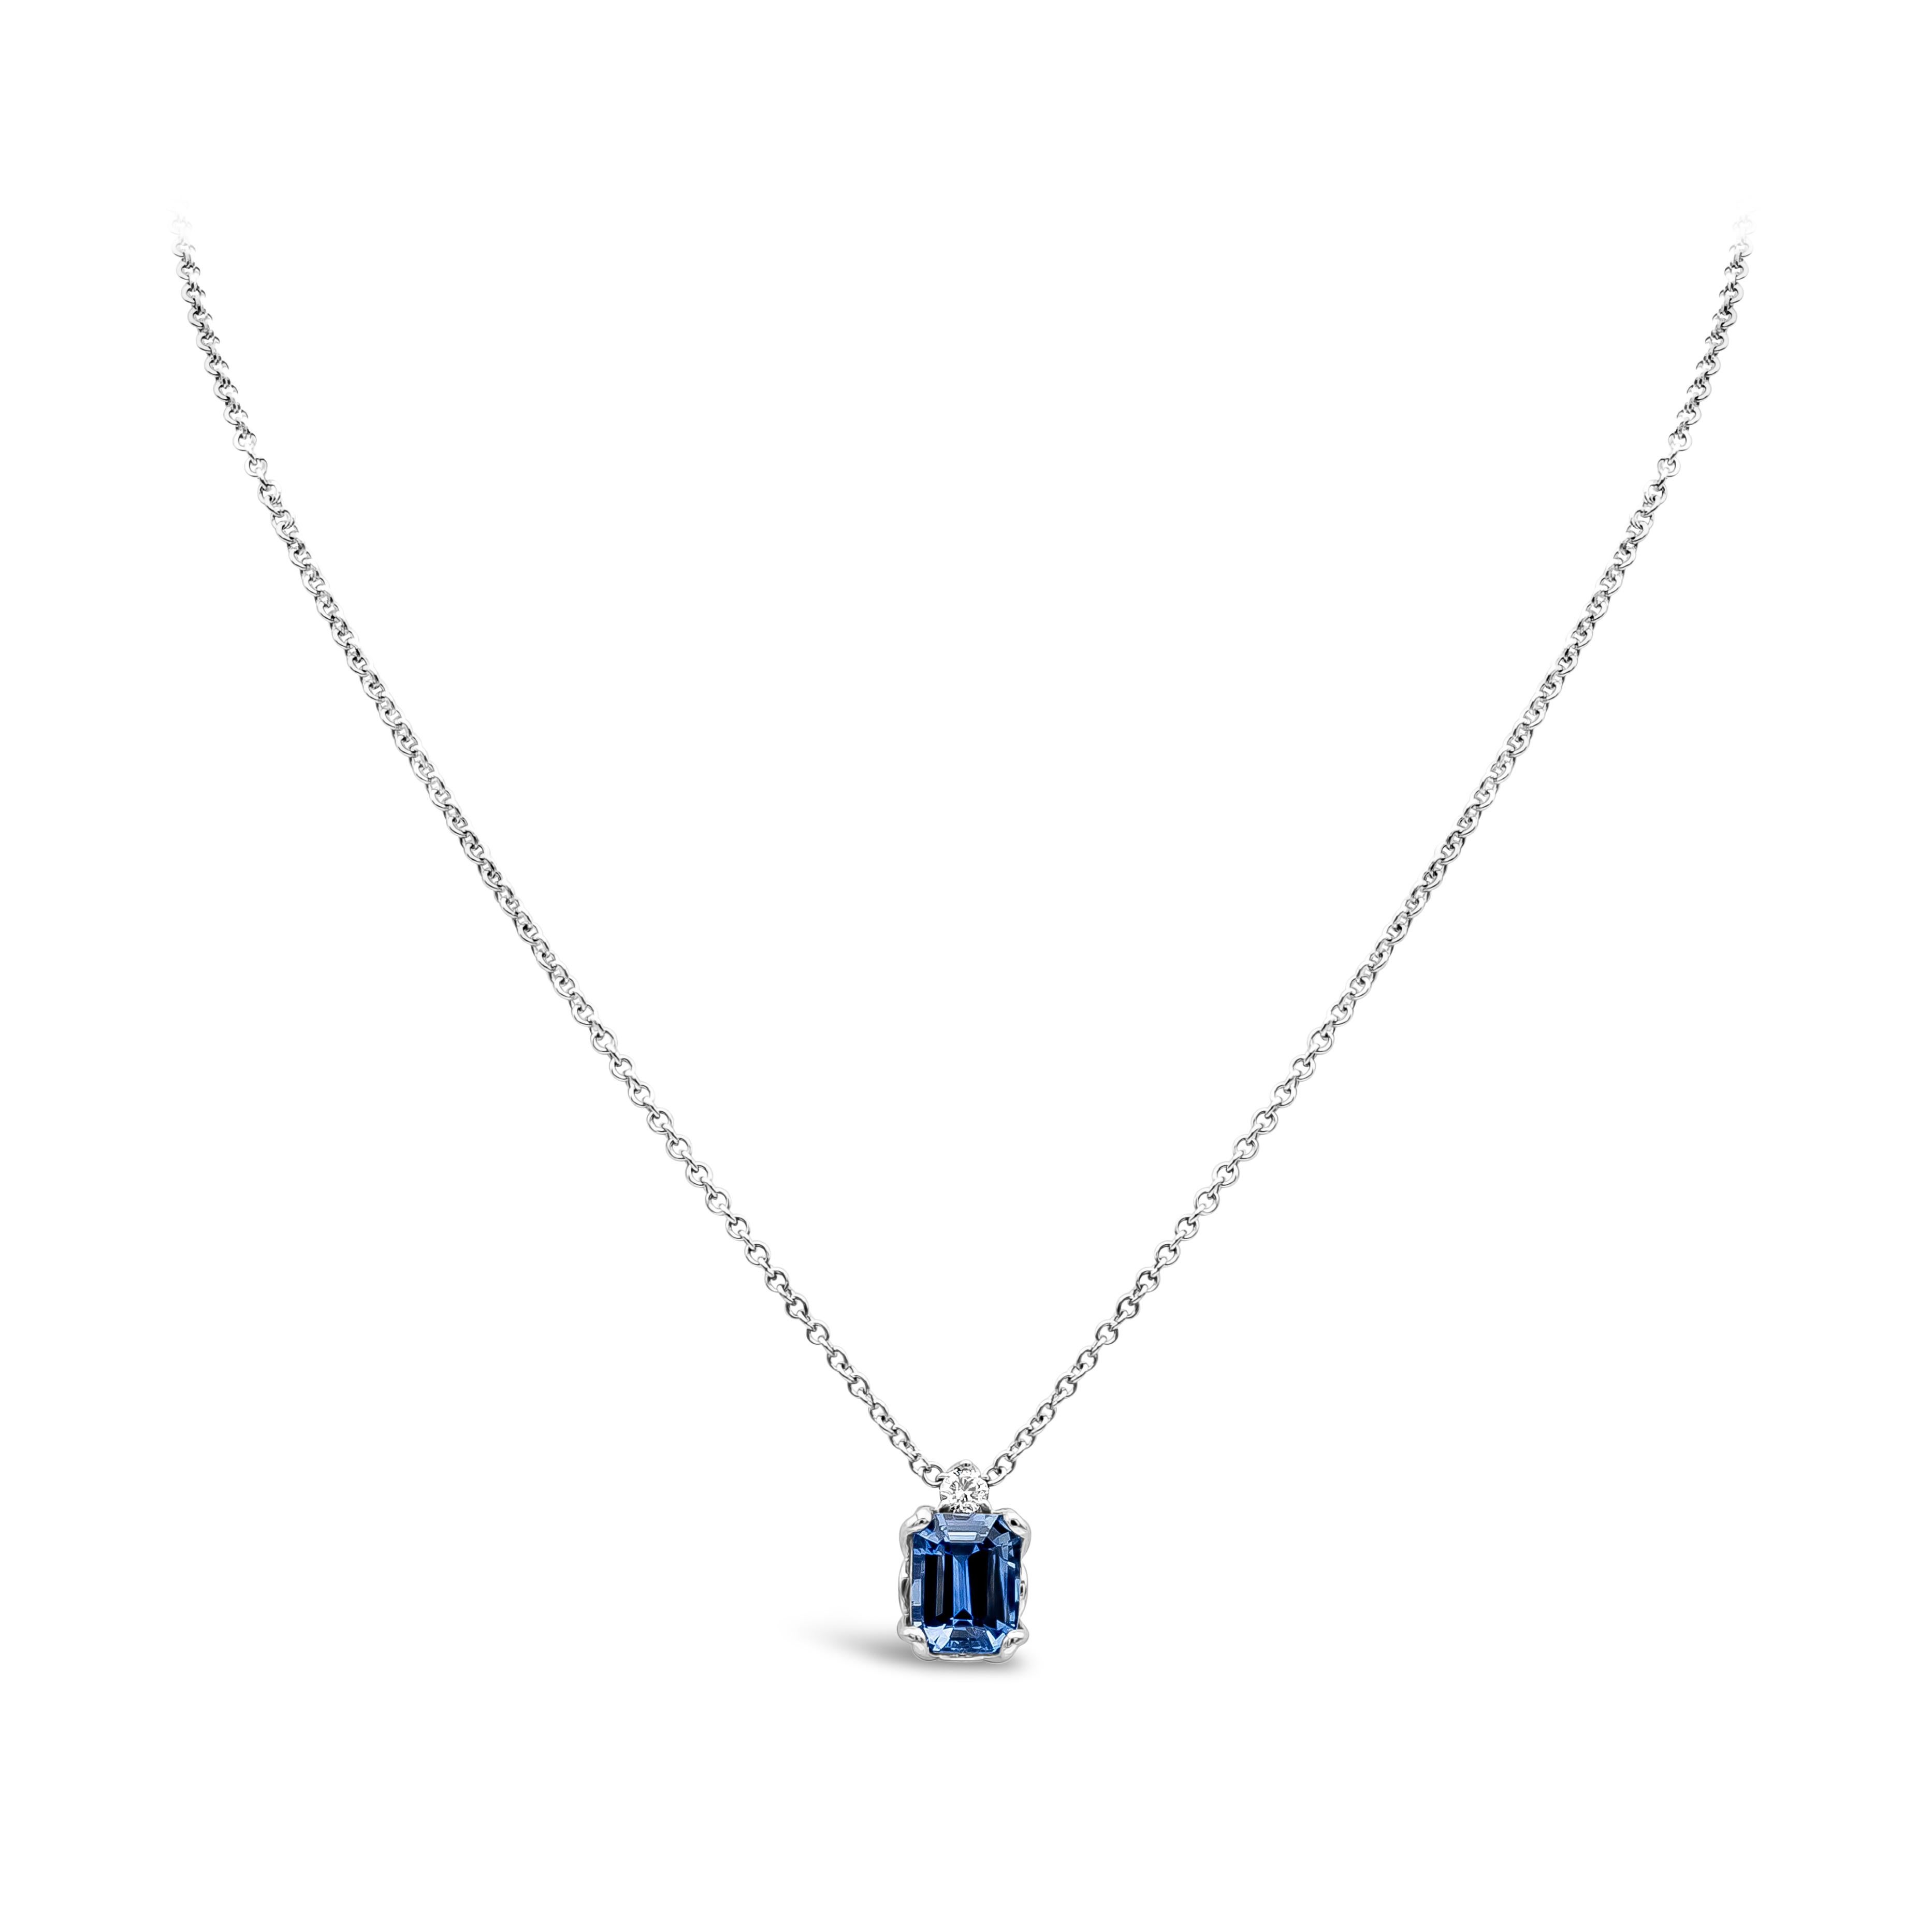 Diese atemberaubende Anhänger-Halskette präsentiert einen GIA-zertifizierten blauen Saphir mit 2,77 Karat im Smaragdschliff als Mittelstein und 1 runden Brillanten mit einem Gesamtgewicht von 0,09 Karat, Farbe F, Reinheit VS, gefasst in 18 Karat